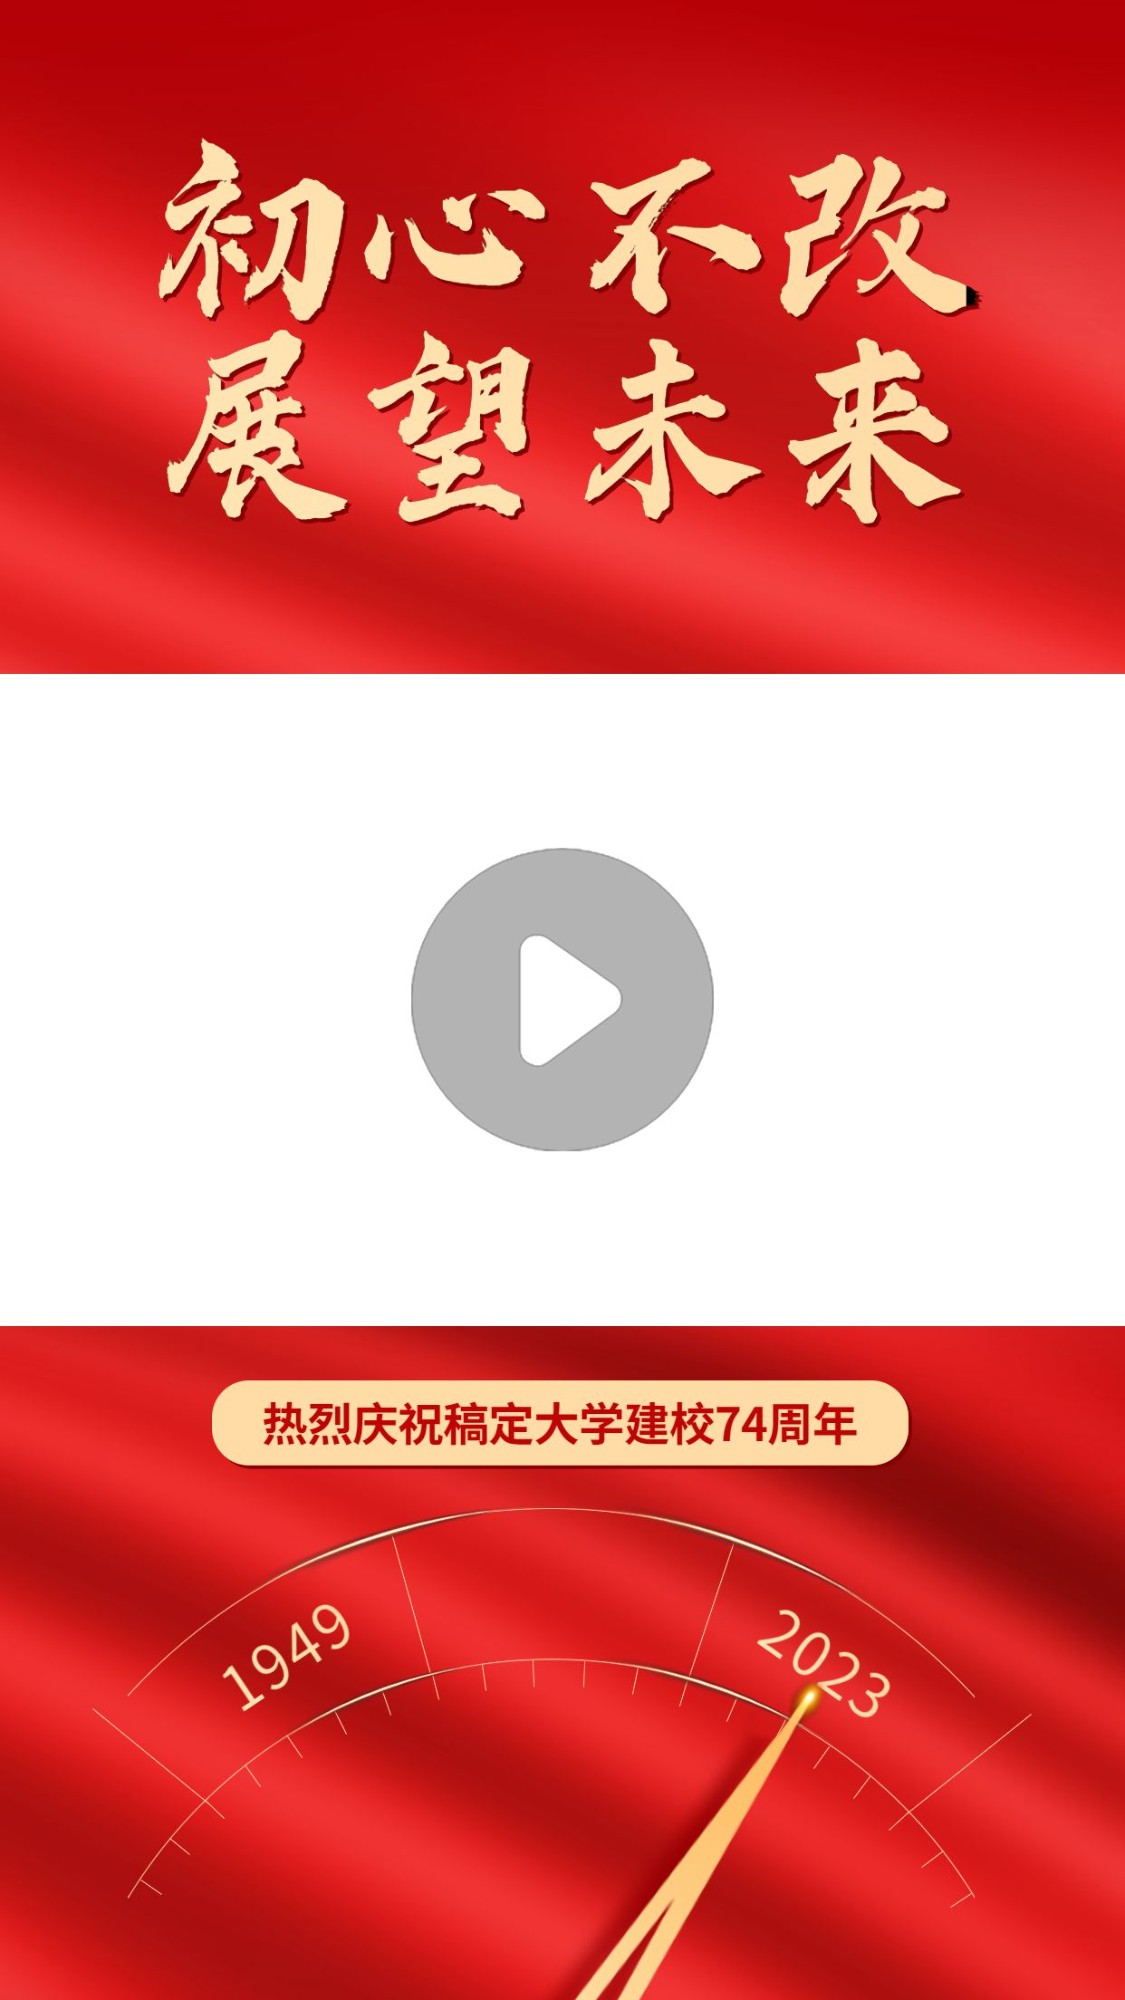 国庆节祝福红金短视频边框背景预览效果